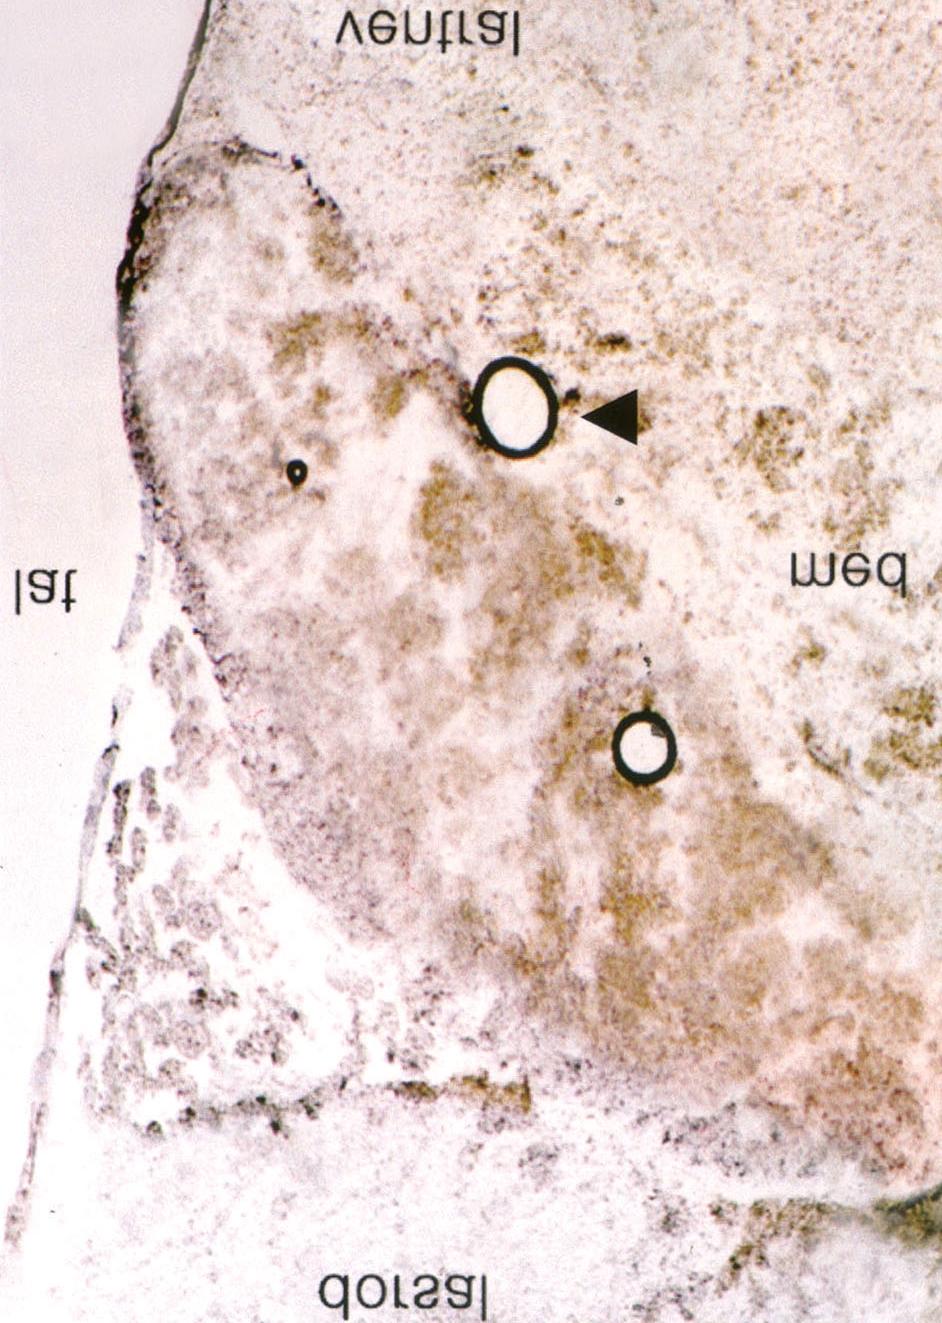 살리실산을 이용한 흰쥐 이명 모델에서 c-fos의 발현 비교 c-fos에 대한 면역조직화학반응 양성세포의 발현이 LC에서 응 양성세포 발현양상을 비교하였다.